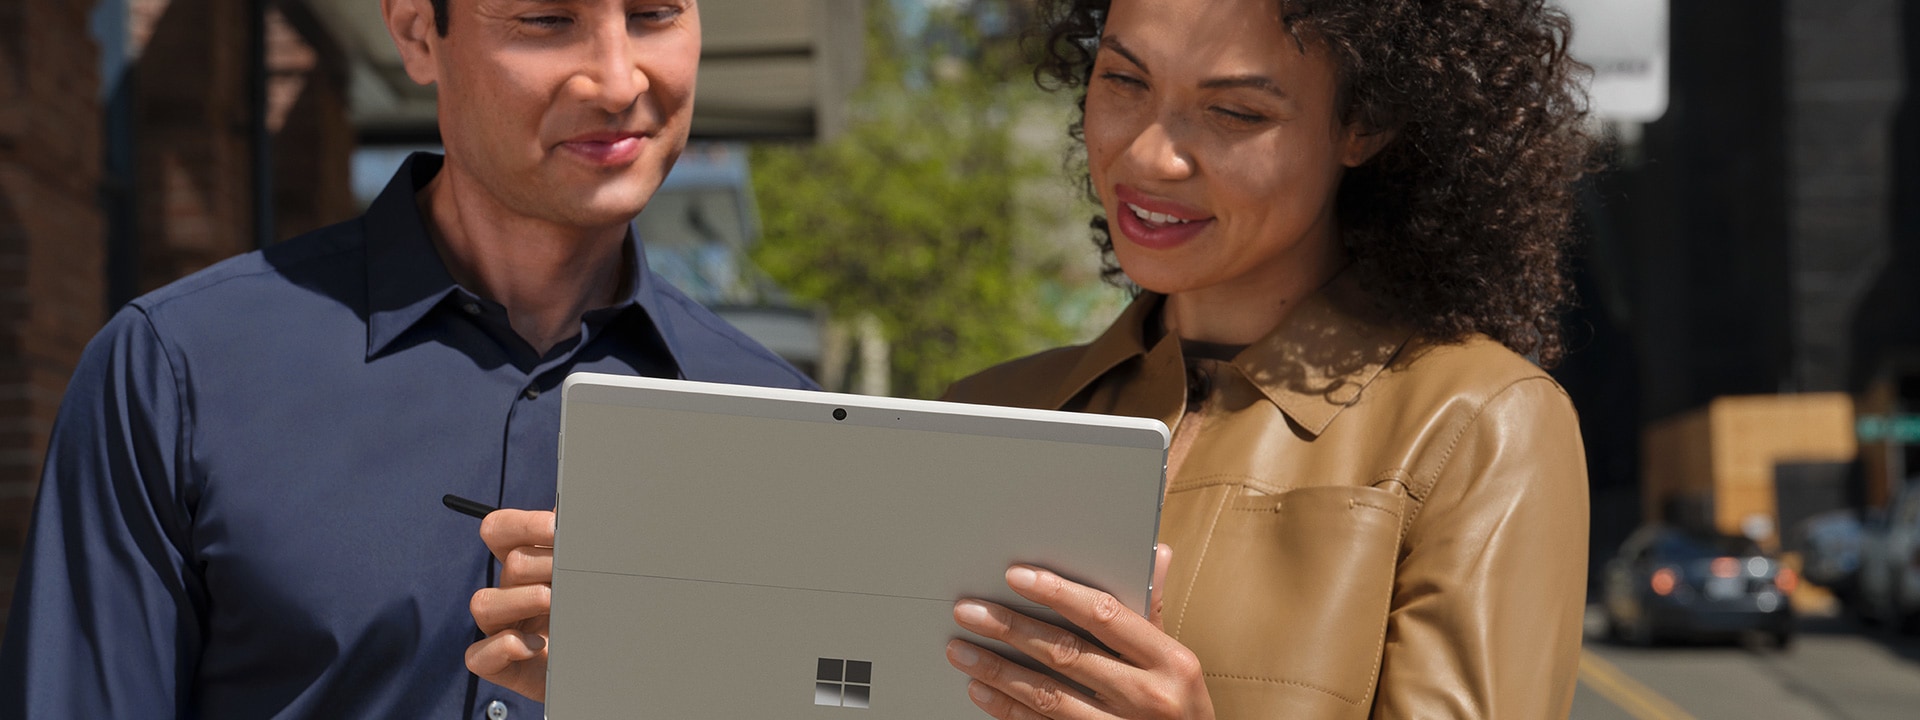 Zwei Kollegen arbeiten über ein Surface Go 3 zusammen in einer großstädtischen Umgebung